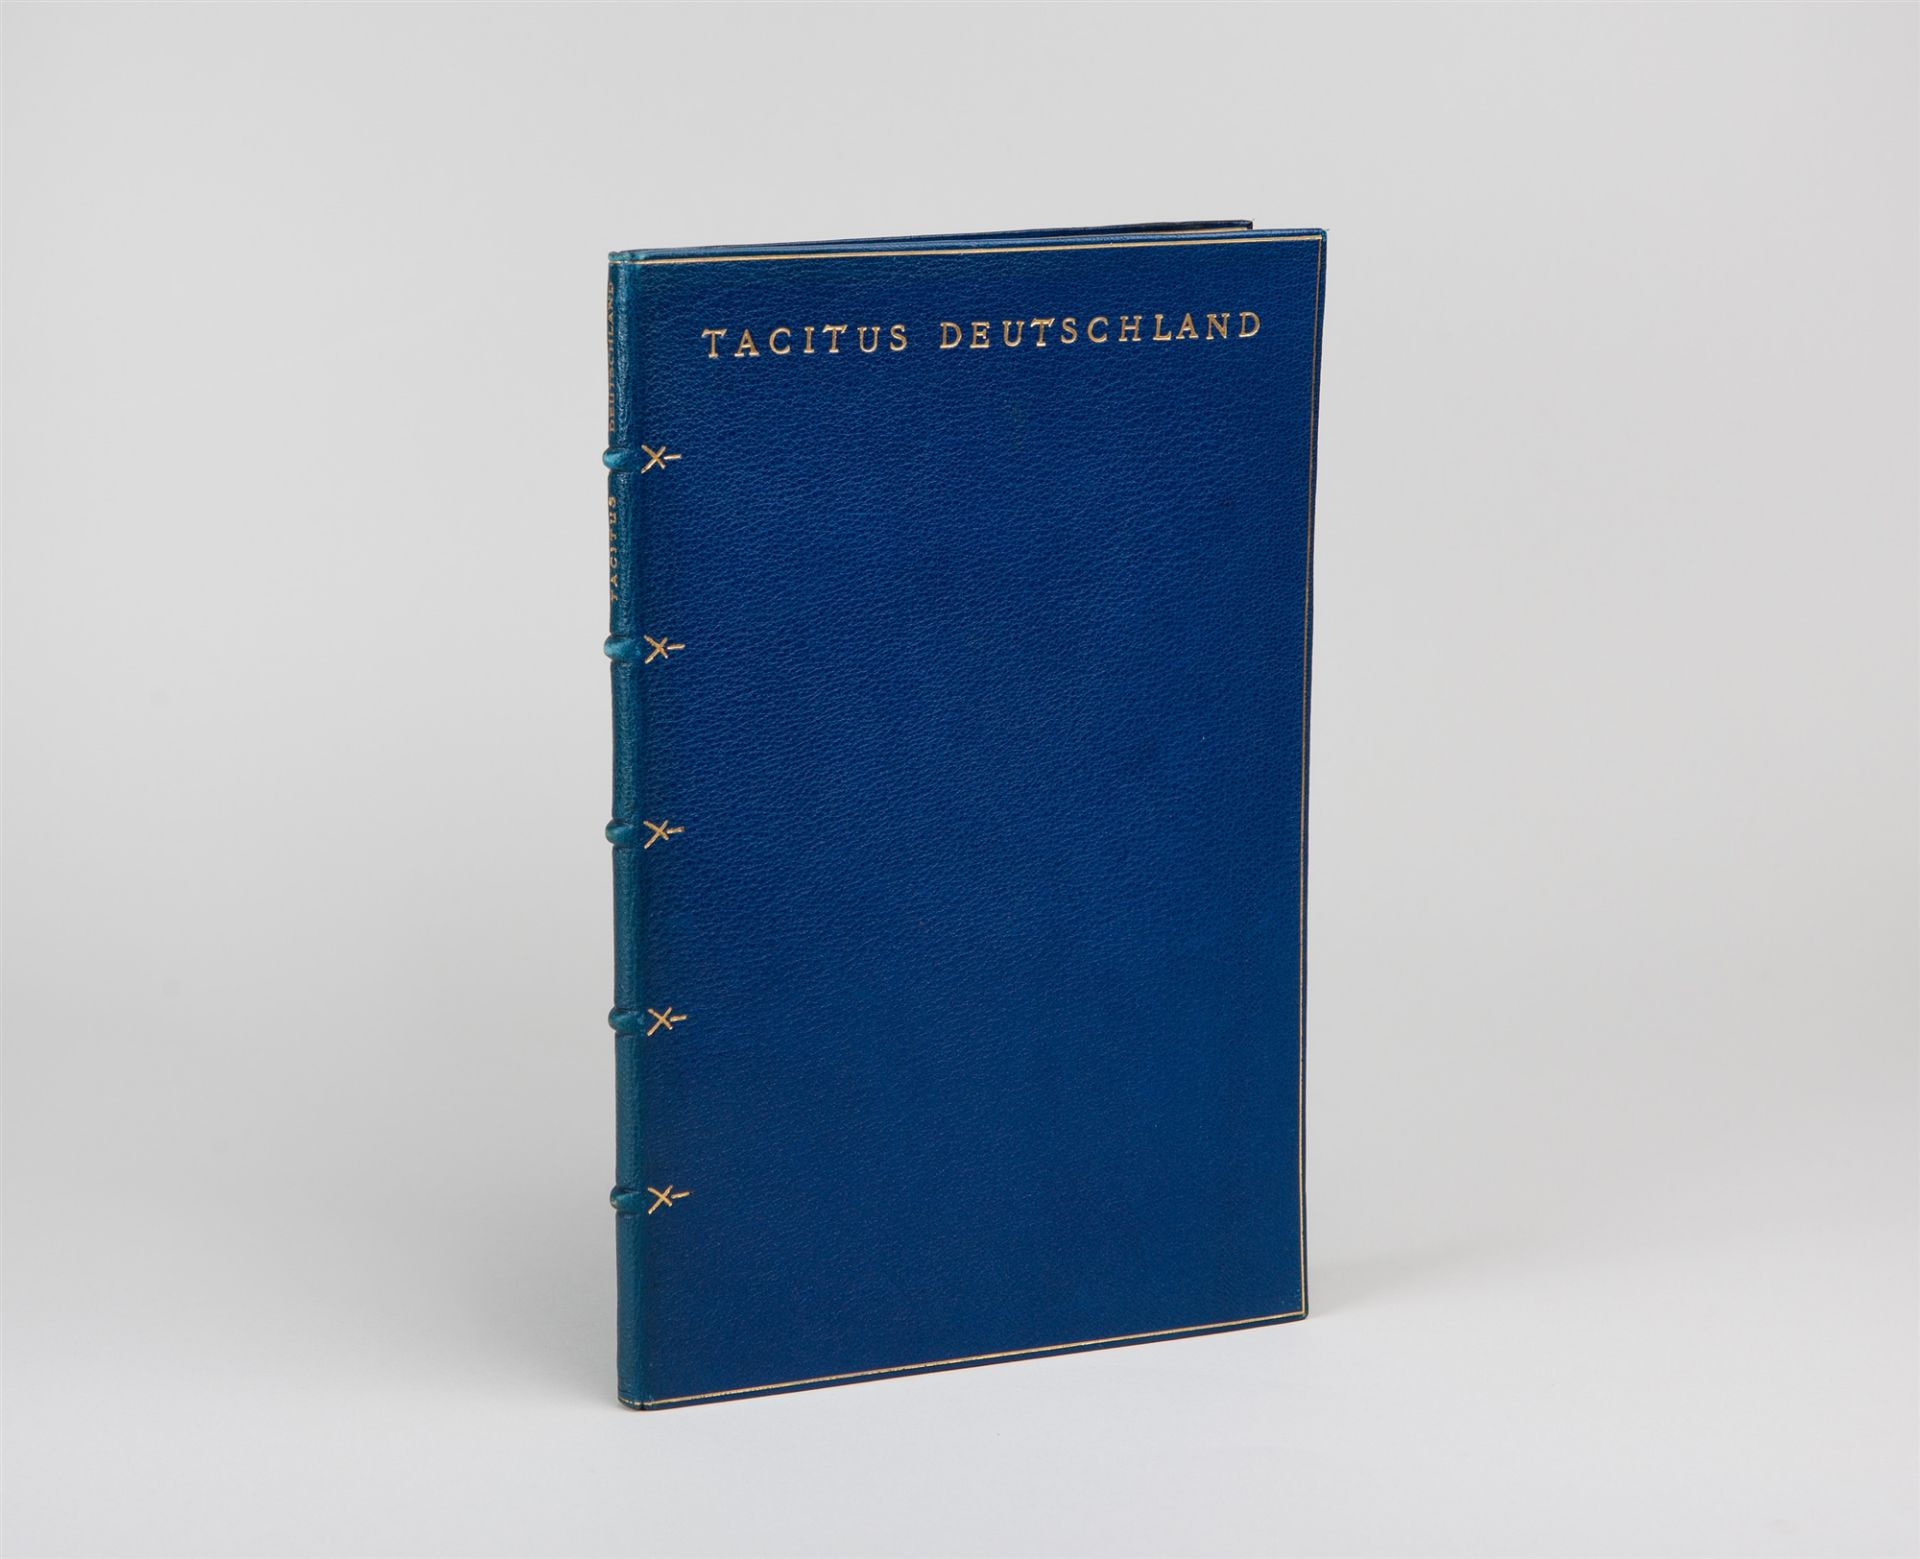 R. Borchardt, Tacitus. Deutschland. München 1922.